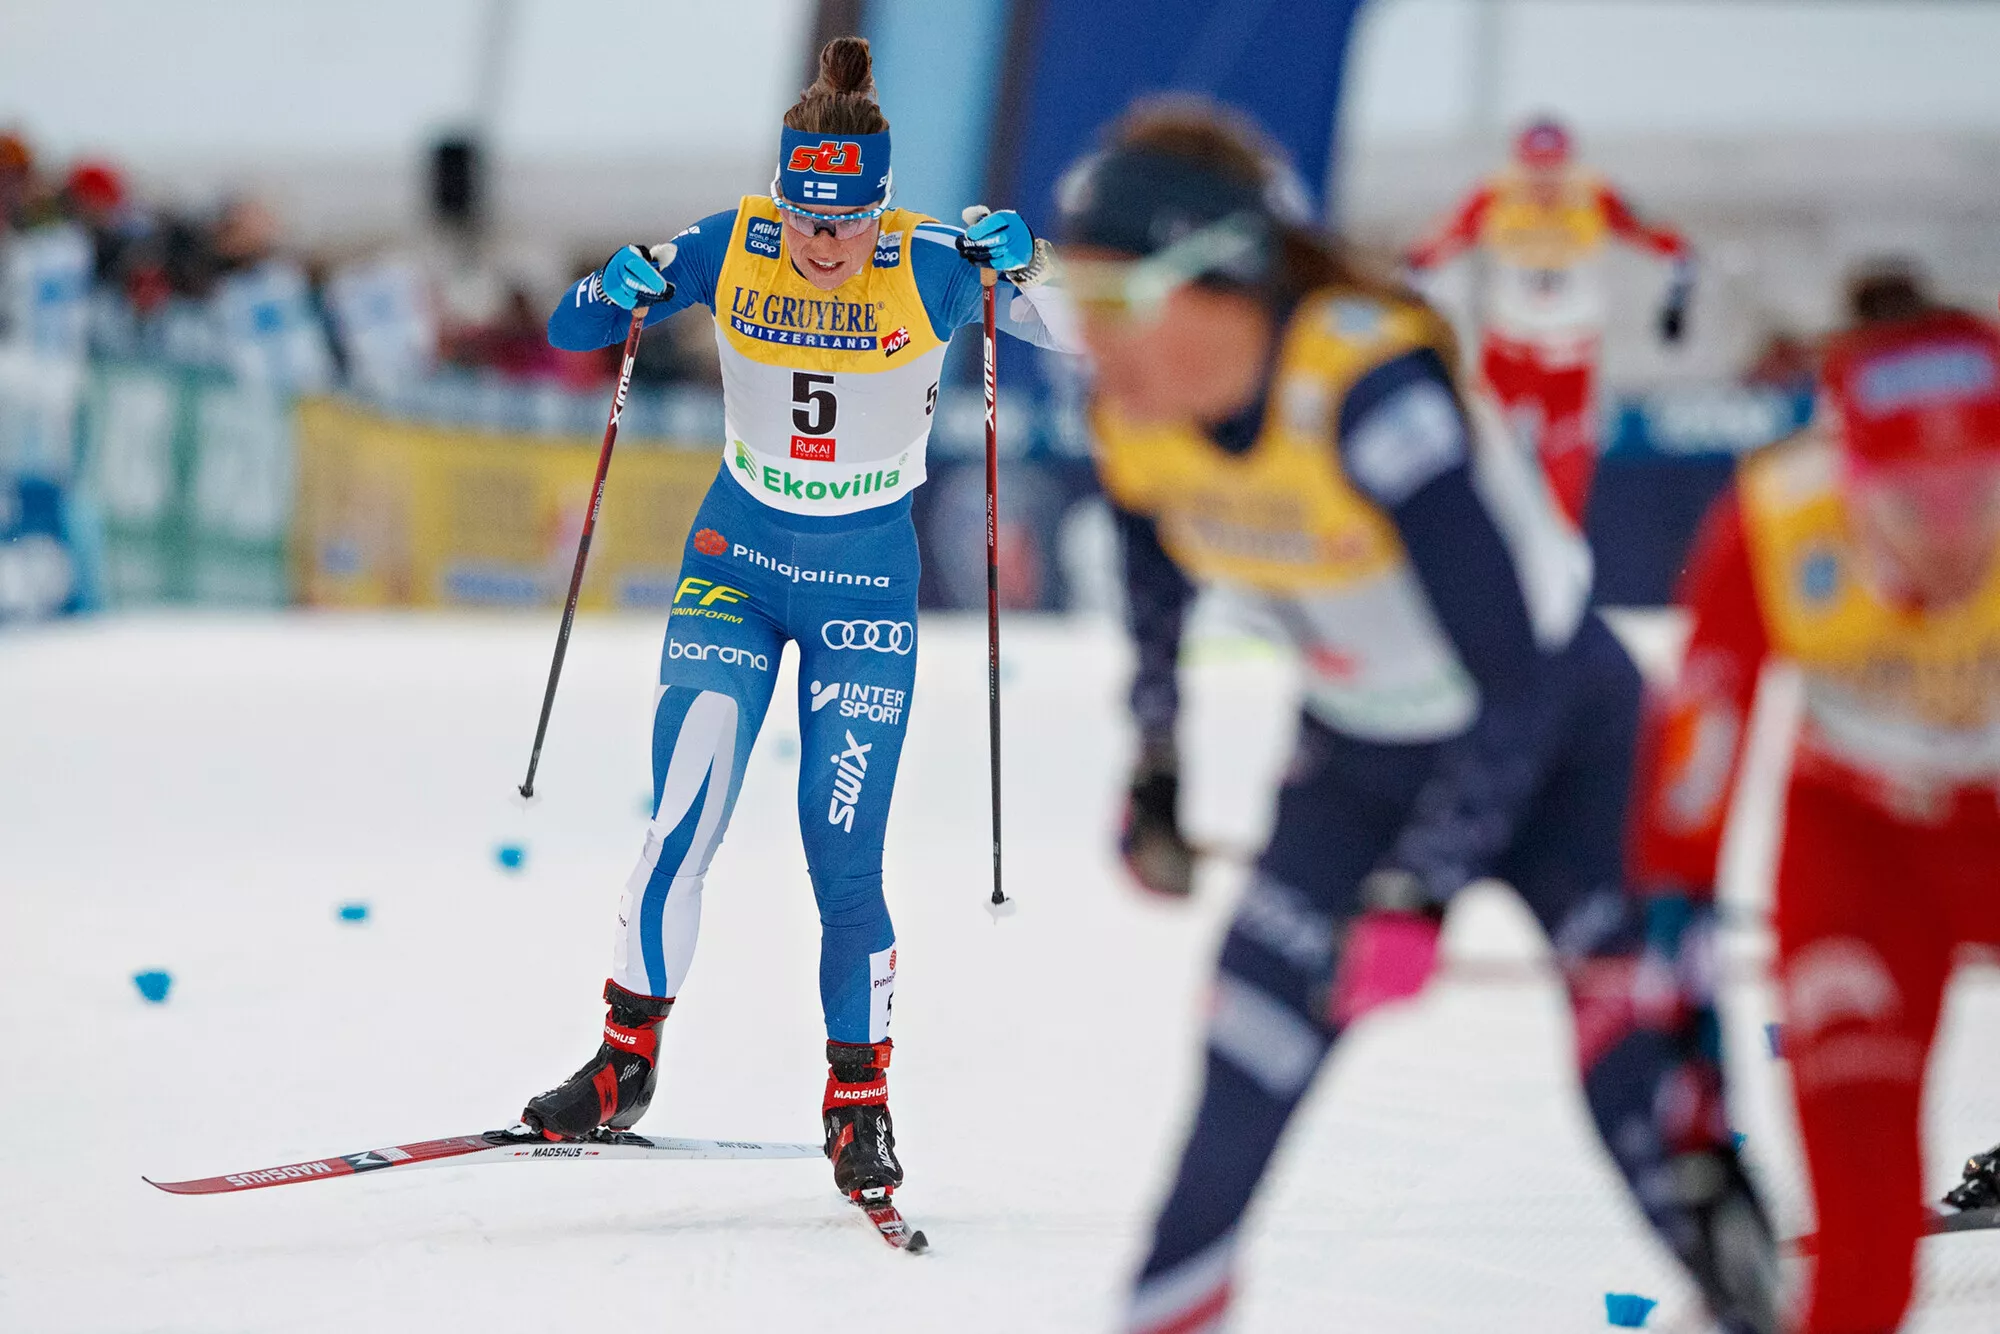 Miten onnistuu Krista Pärmäkoski, kun SM-hiihdot hiihdetään 7.4.?